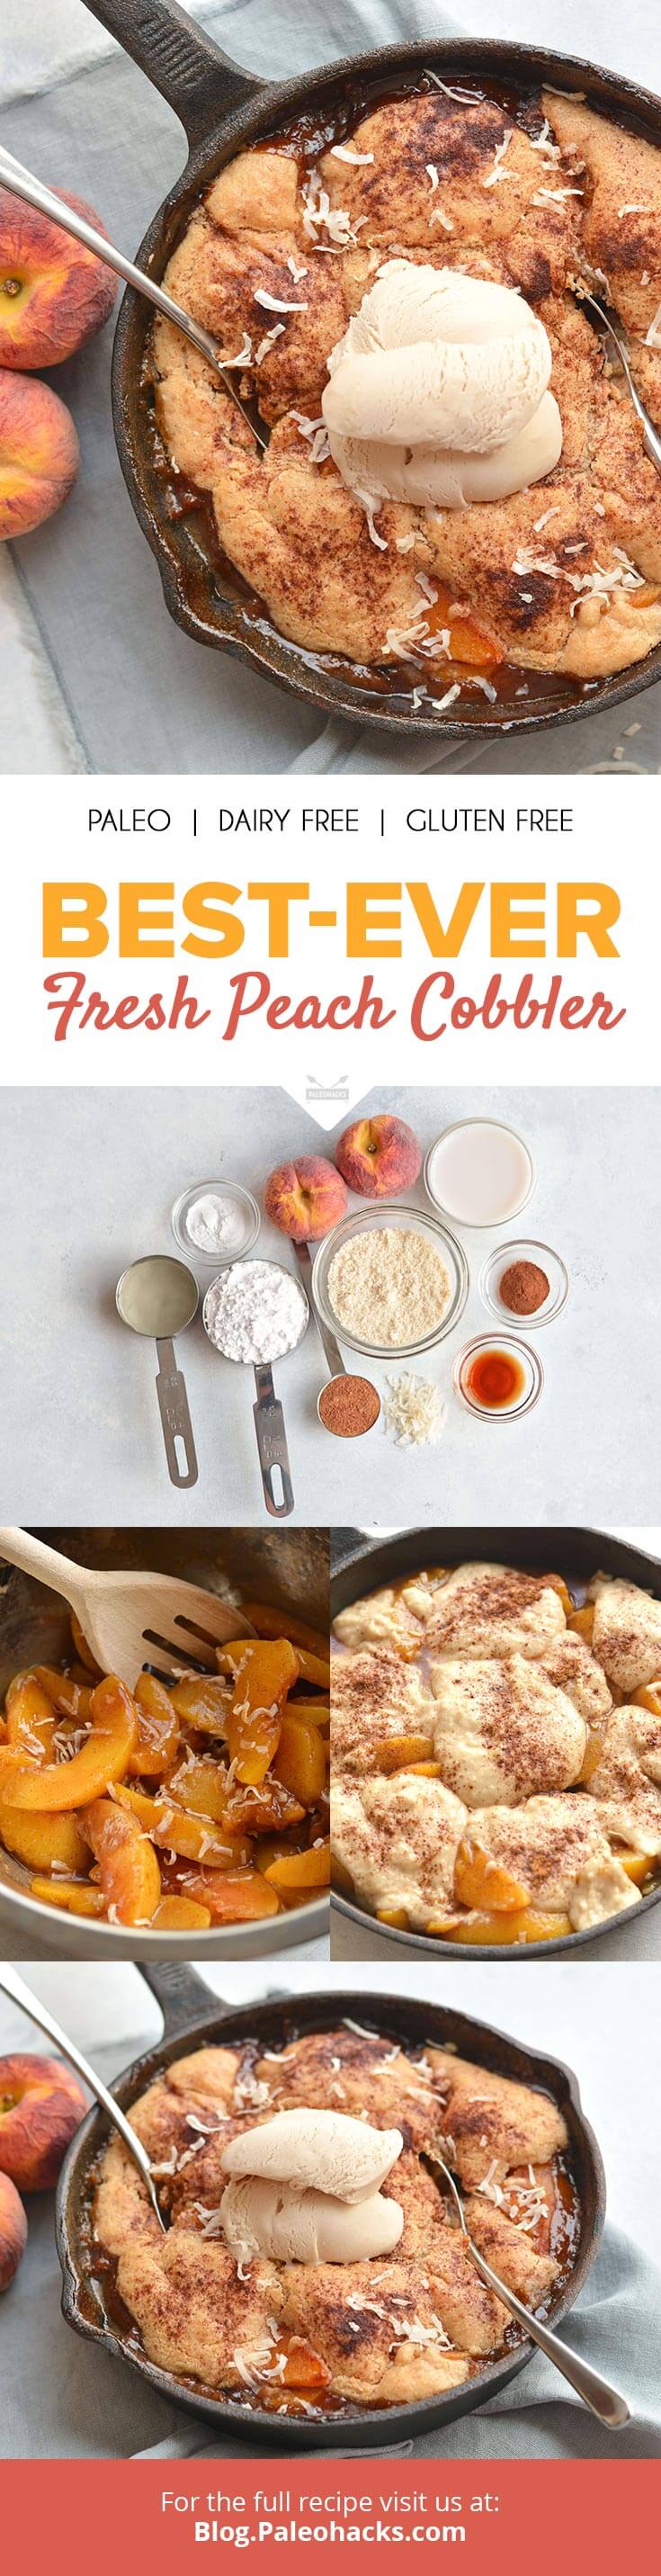 peach cobbler pin